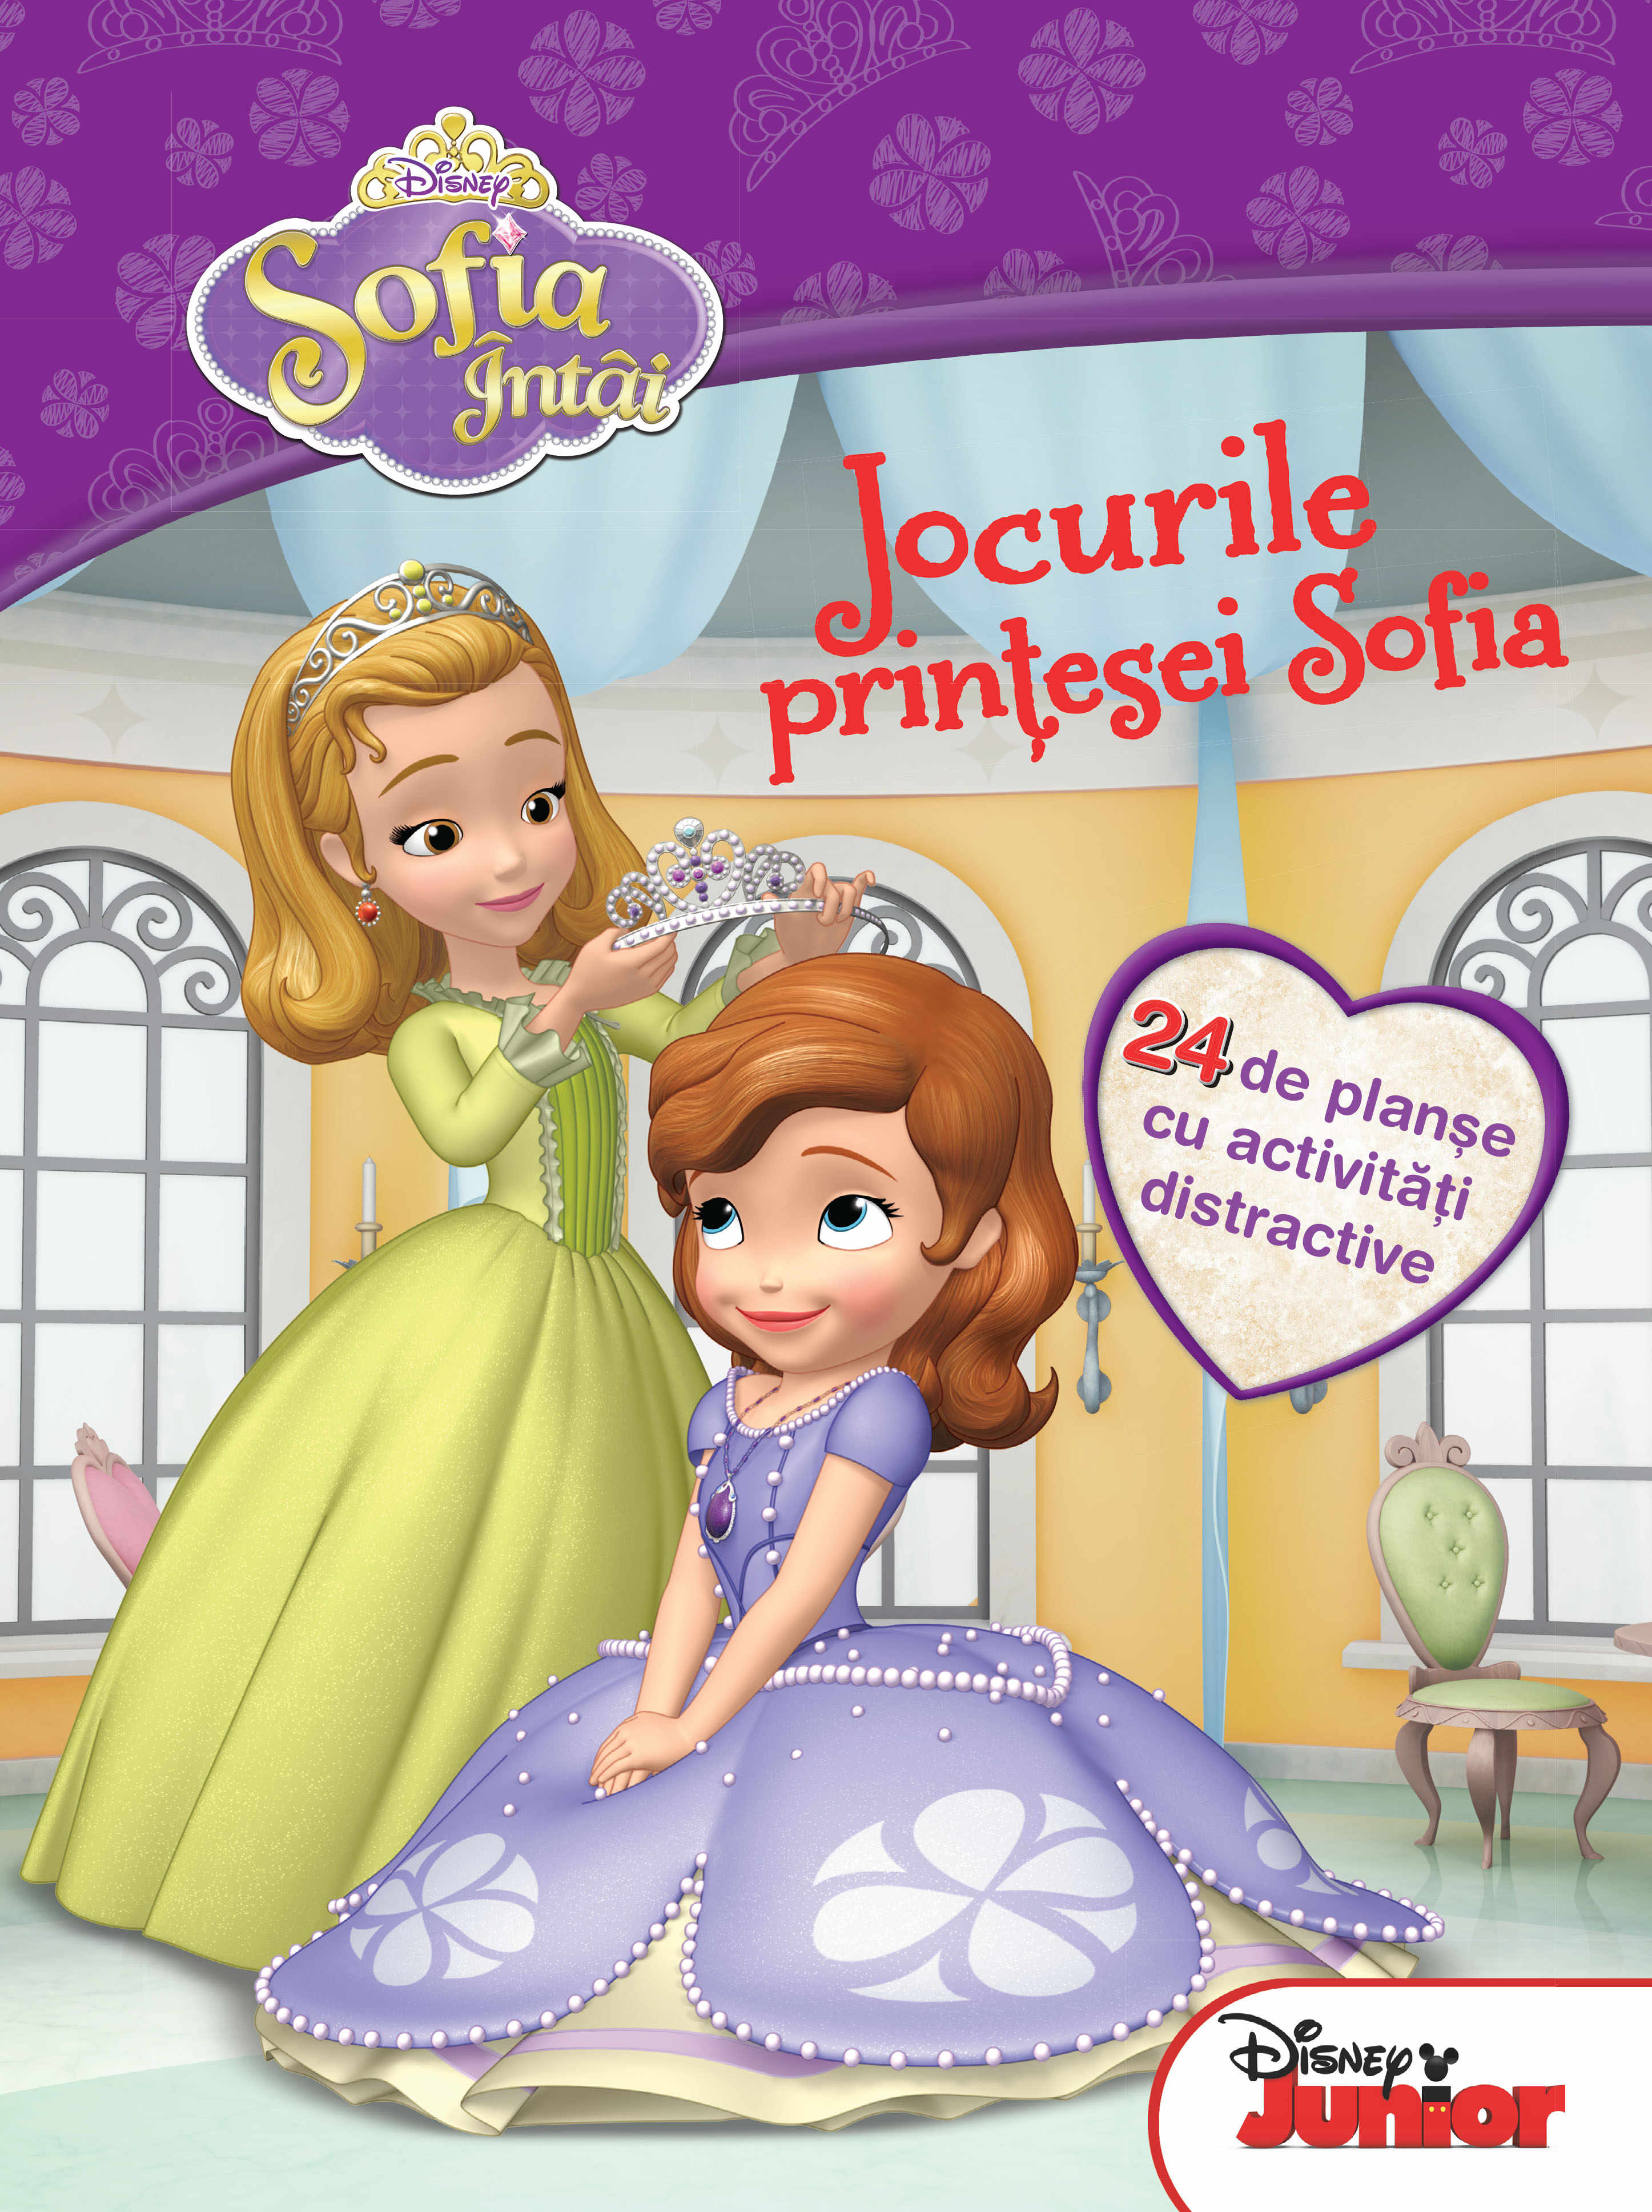 Sofia Întâi. Jocurile prințesei Sofia. 24 de planșe cu activități distractive